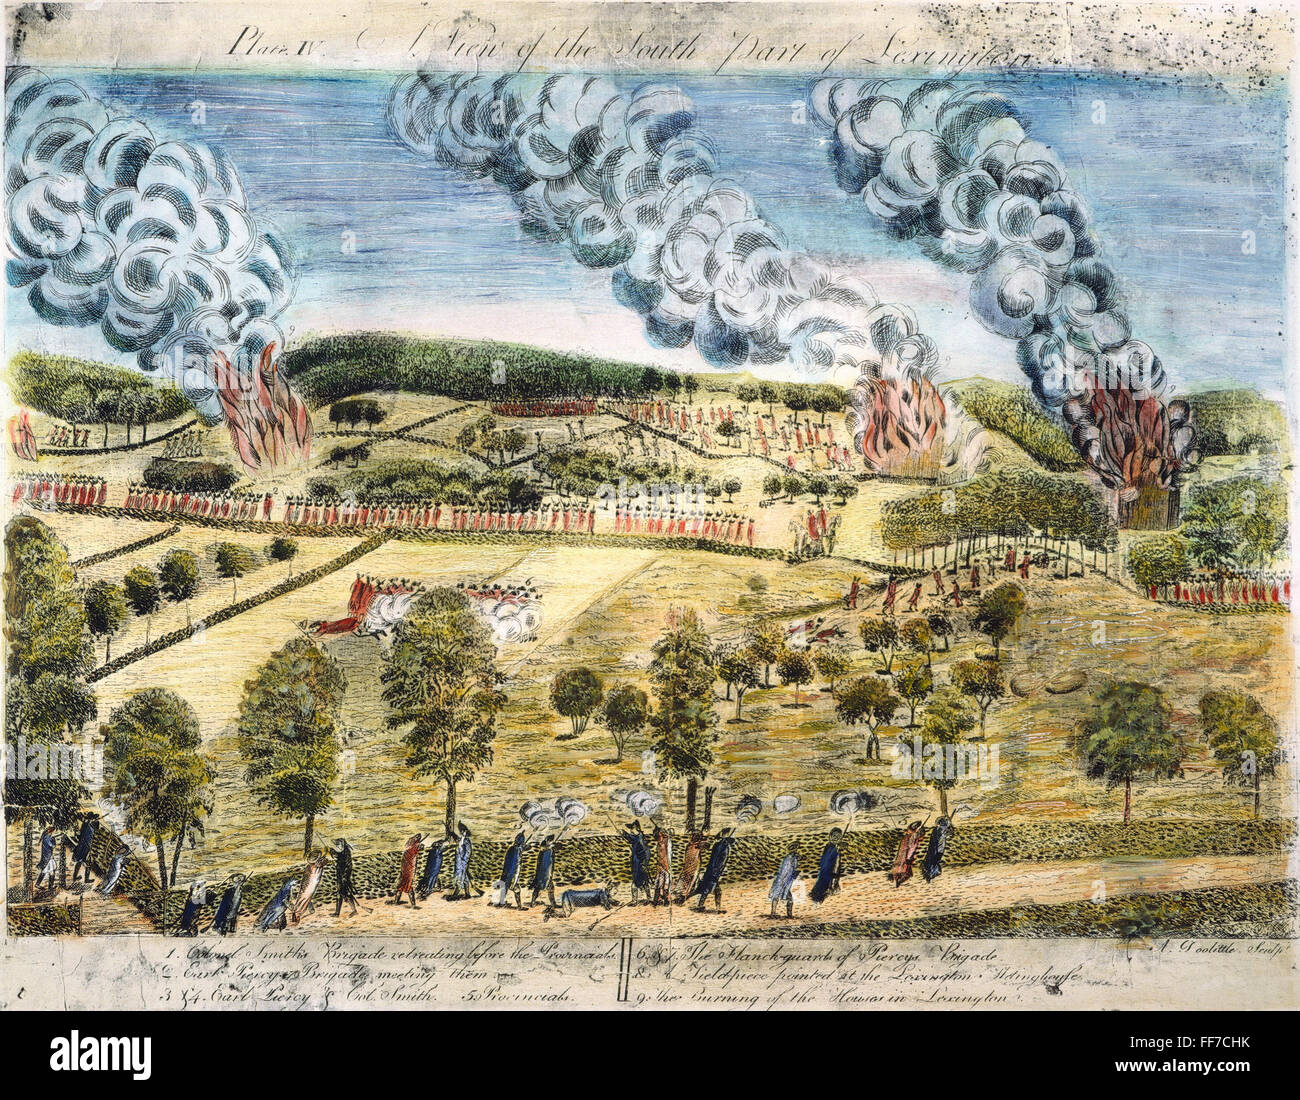 Battaglia di Lexington, 1775. /Nil British disturbato sul loro ritorno a Boston, Massachusetts, in seguito alla battaglia di Lexington, 19 aprile 1775. Incisione da Amos Doolittle, 1775. Foto Stock